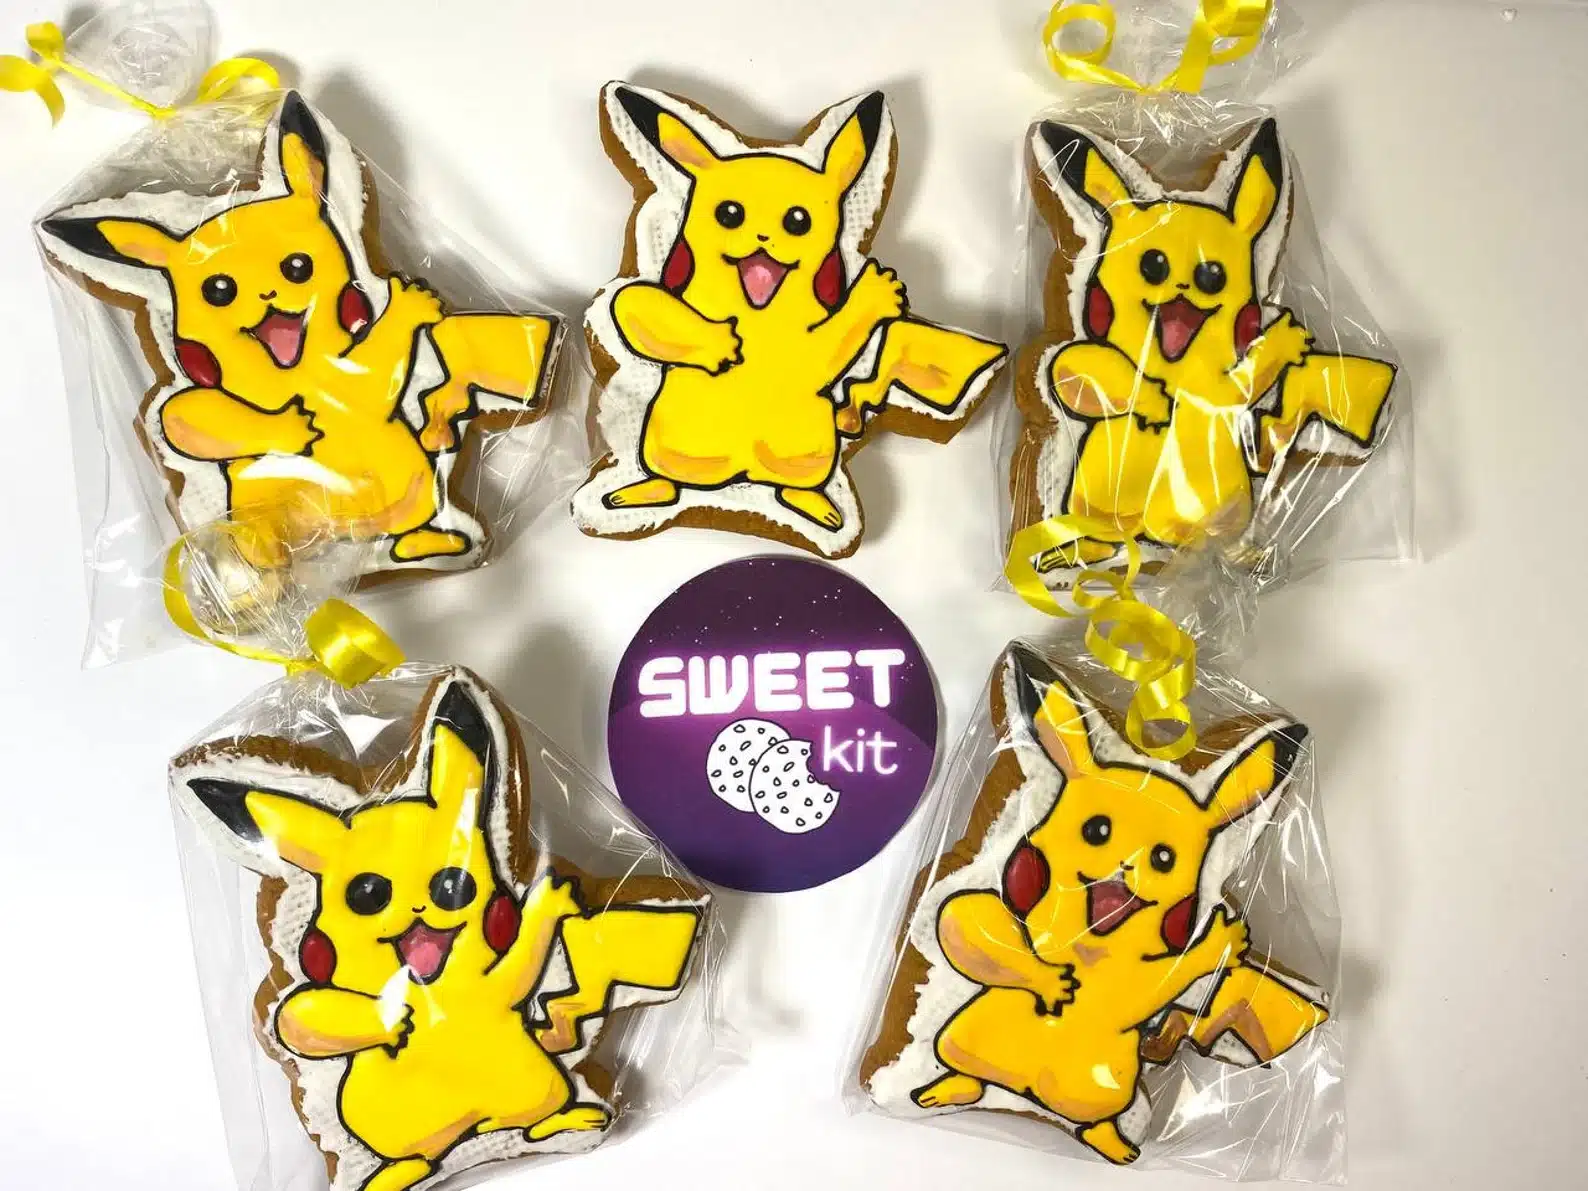 5 Pcs Pikachu Cookies Set